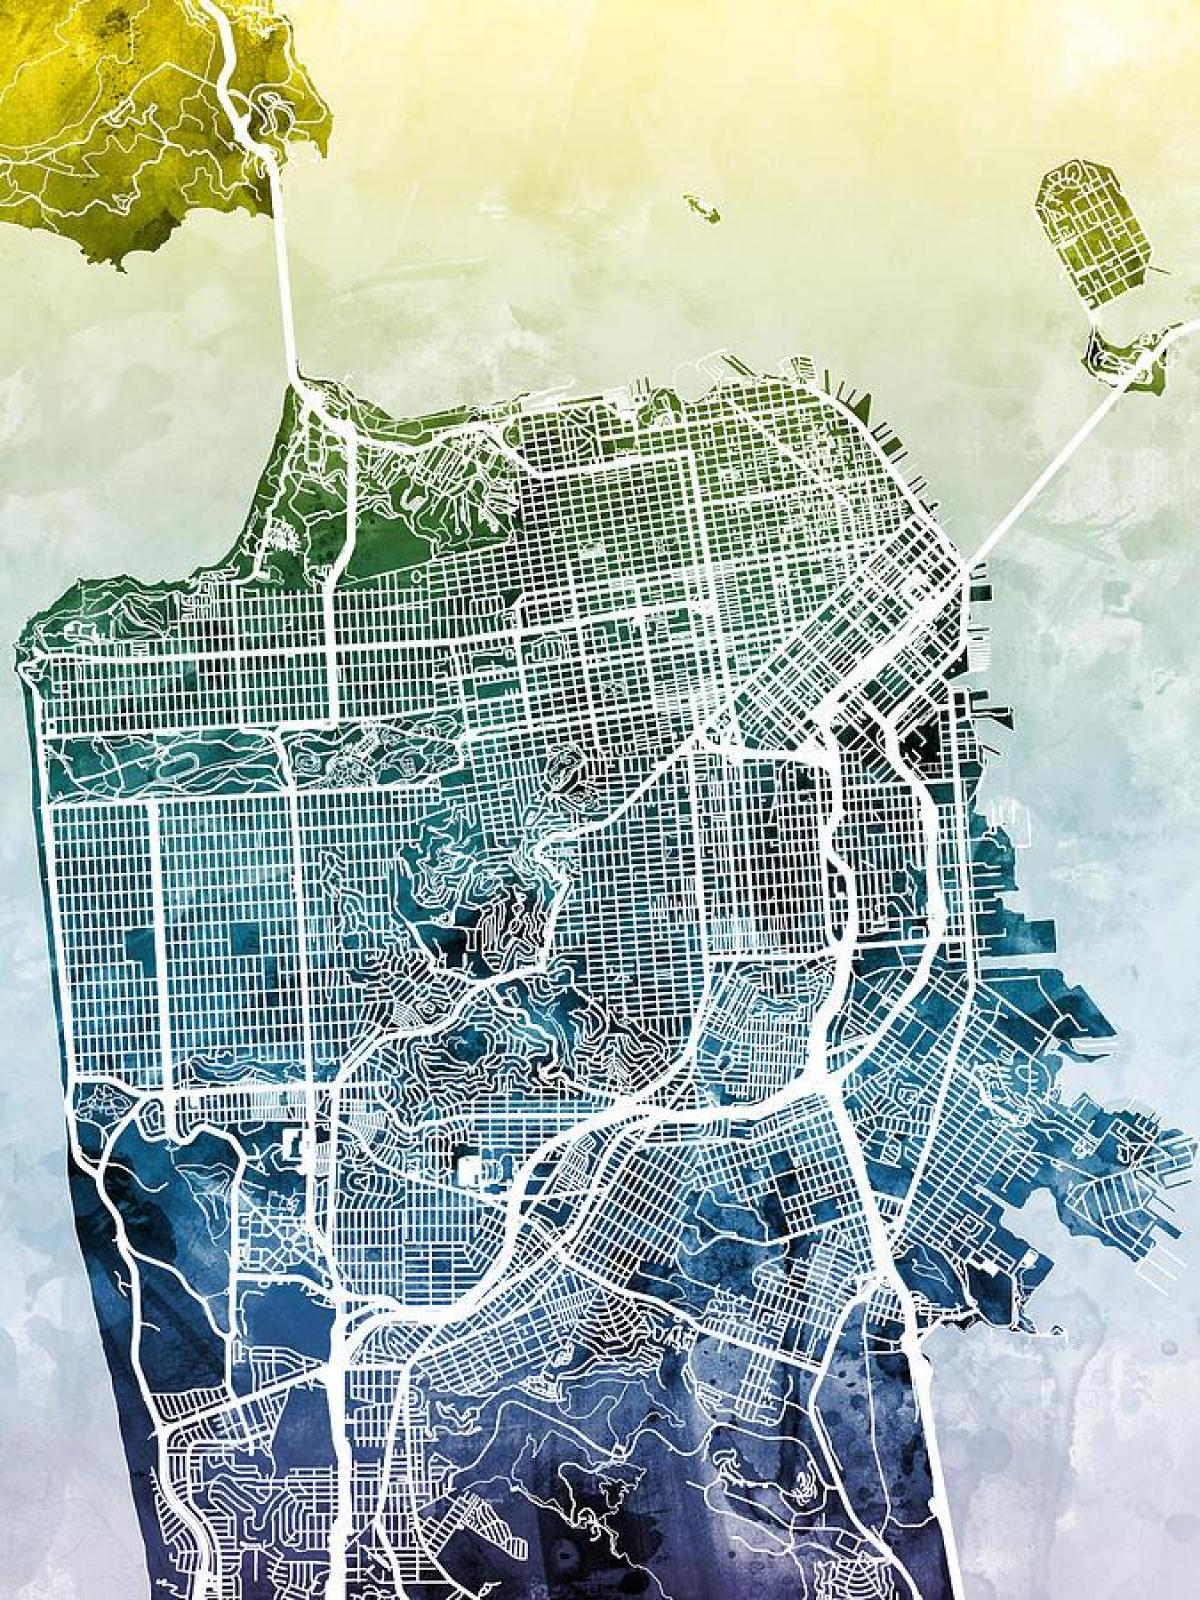 نقشه شهر سان فرانسیسکو هنر